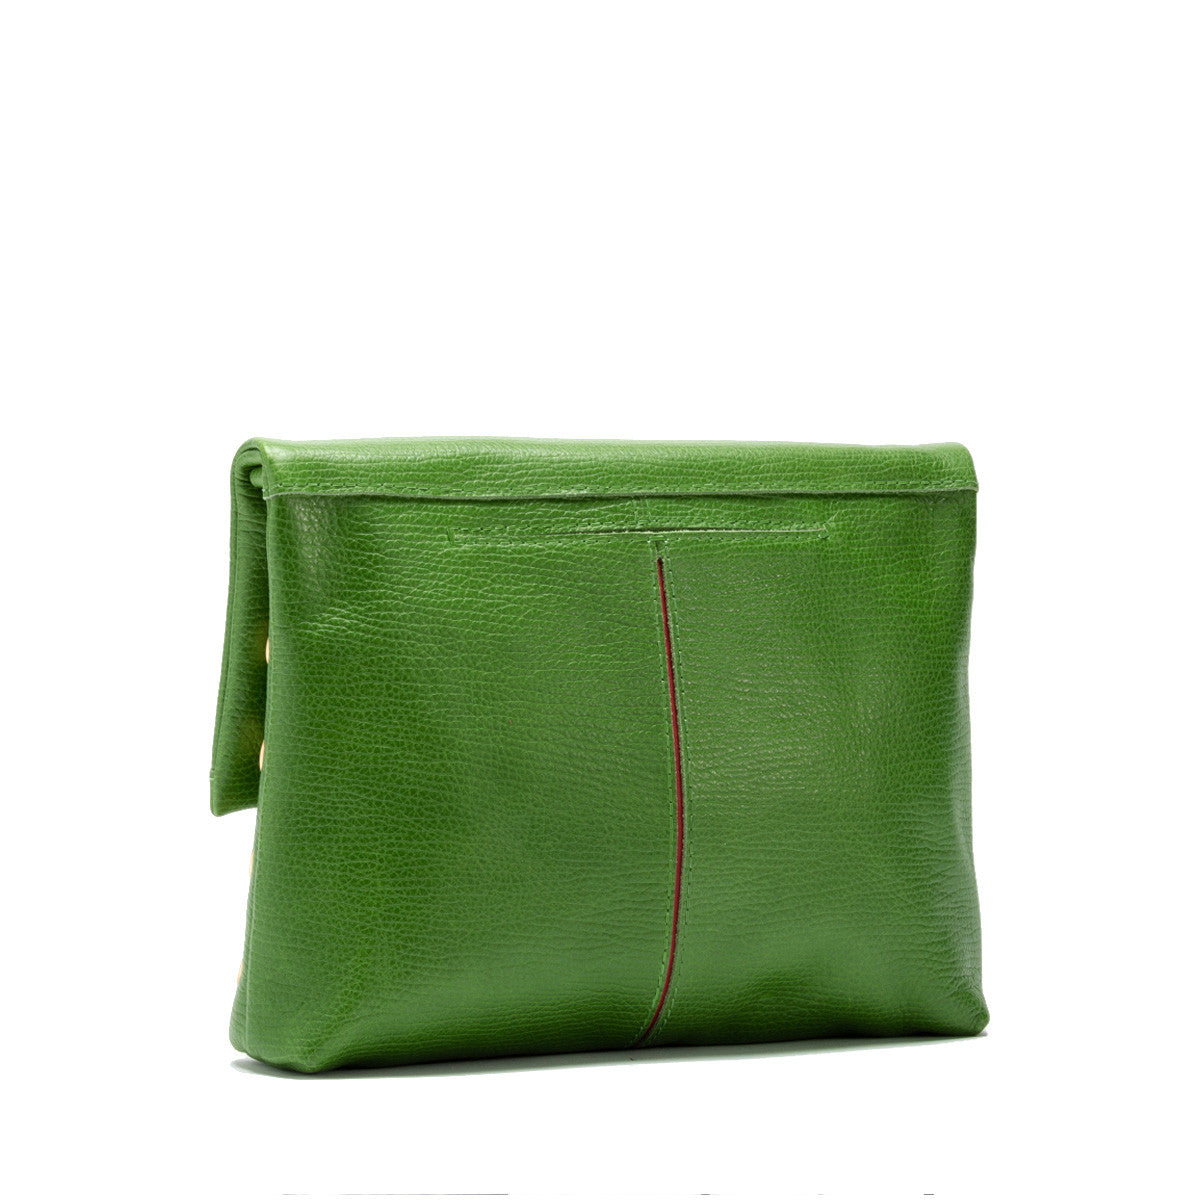 VIP Medium Palm Green Handbag